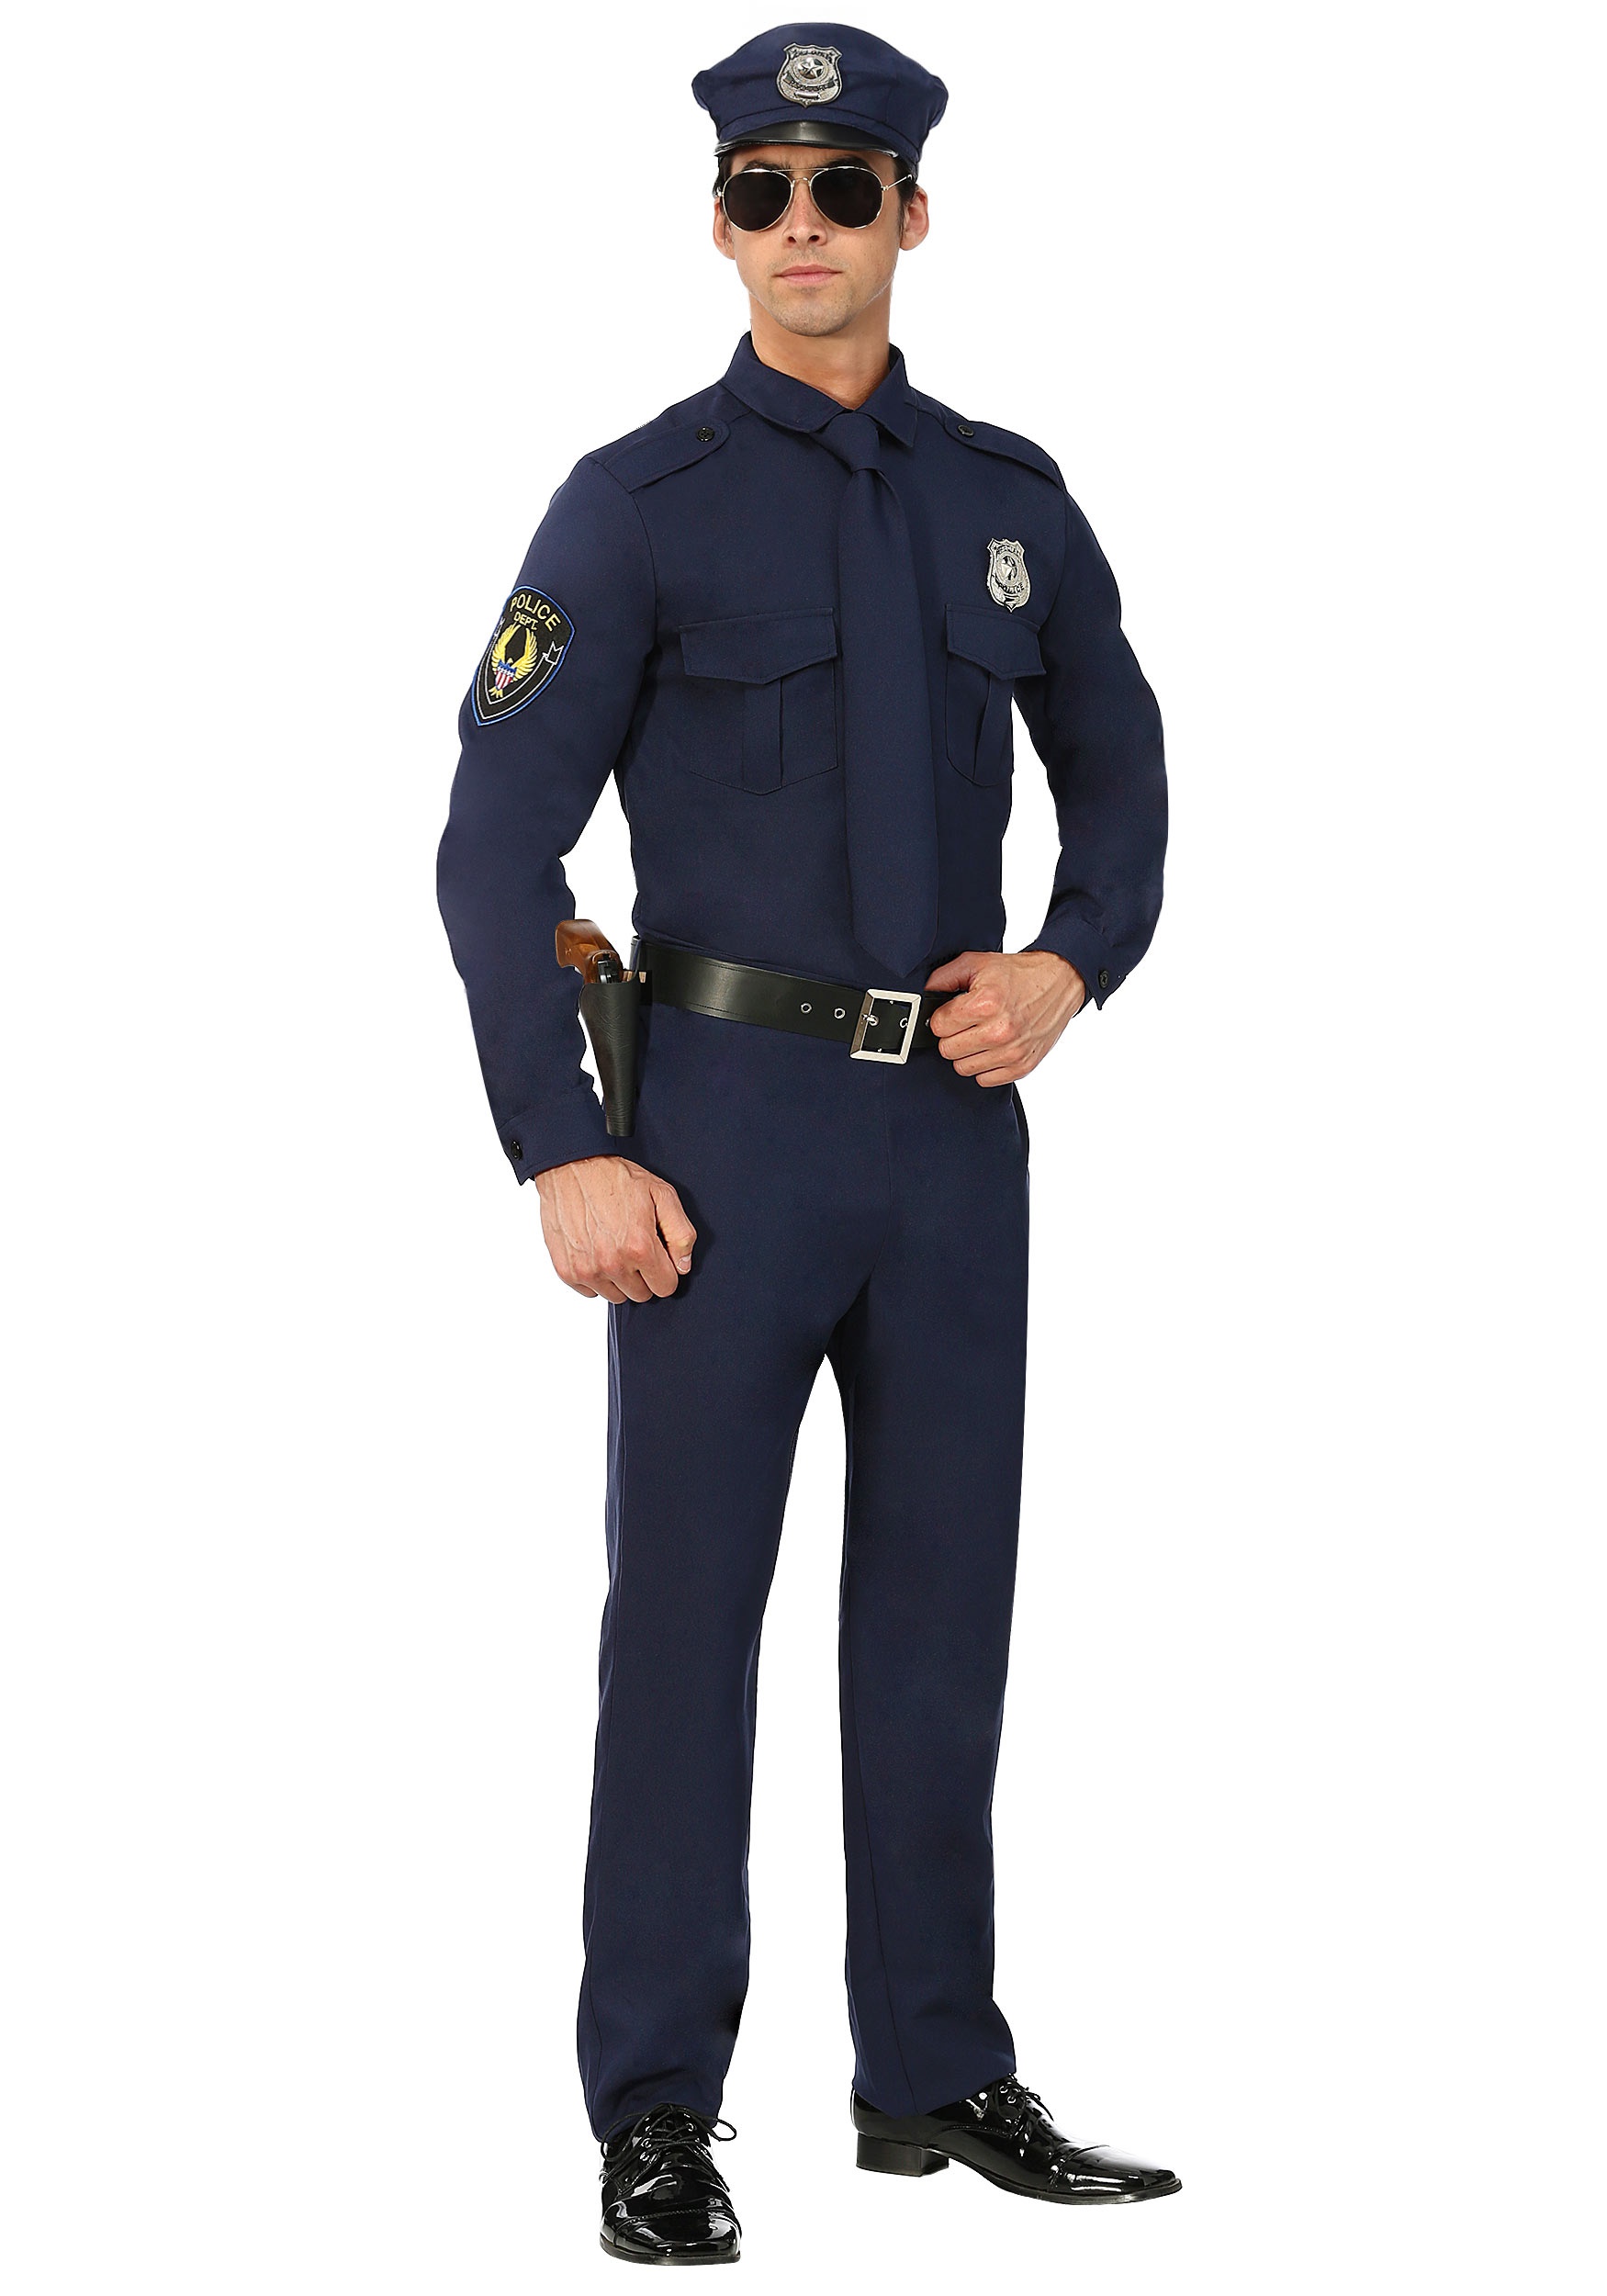 Plus Size Cop Costume for Men